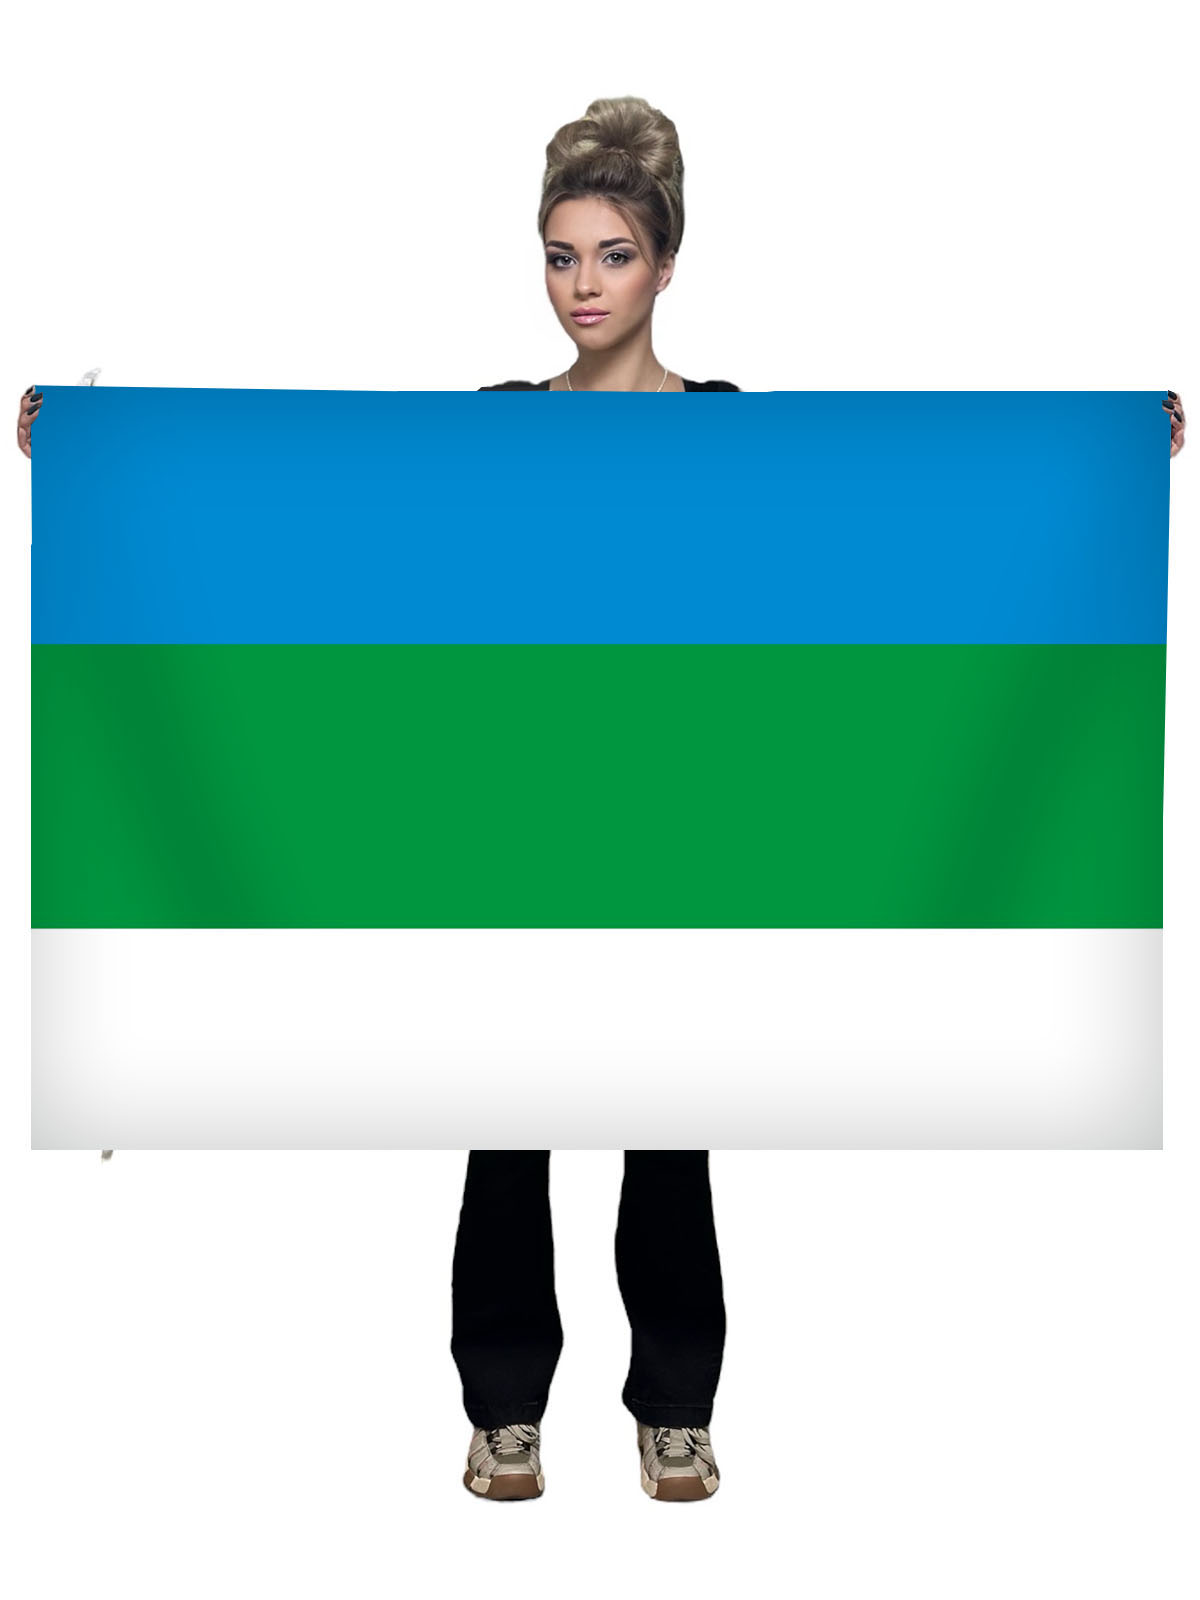 Купить флаг Республики Коми в Республике Коми